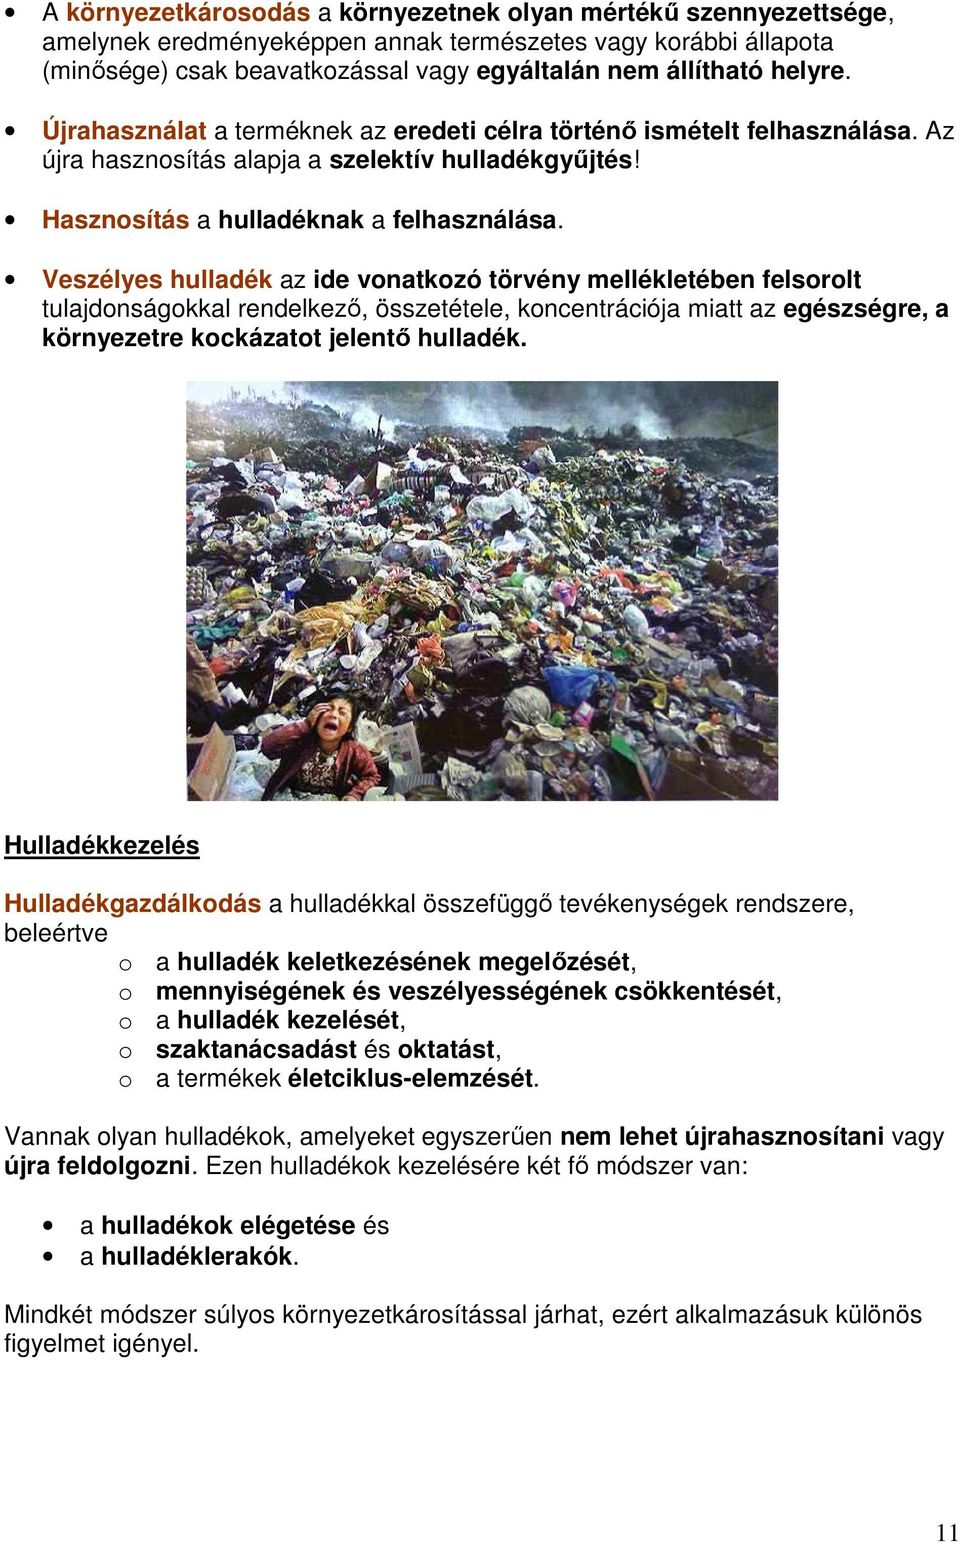 Veszélyes hulladék az ide vonatkozó törvény mellékletében felsorolt tulajdonságokkal rendelkezı, összetétele, koncentrációja miatt az egészségre, a környezetre kockázatot jelentı hulladék.